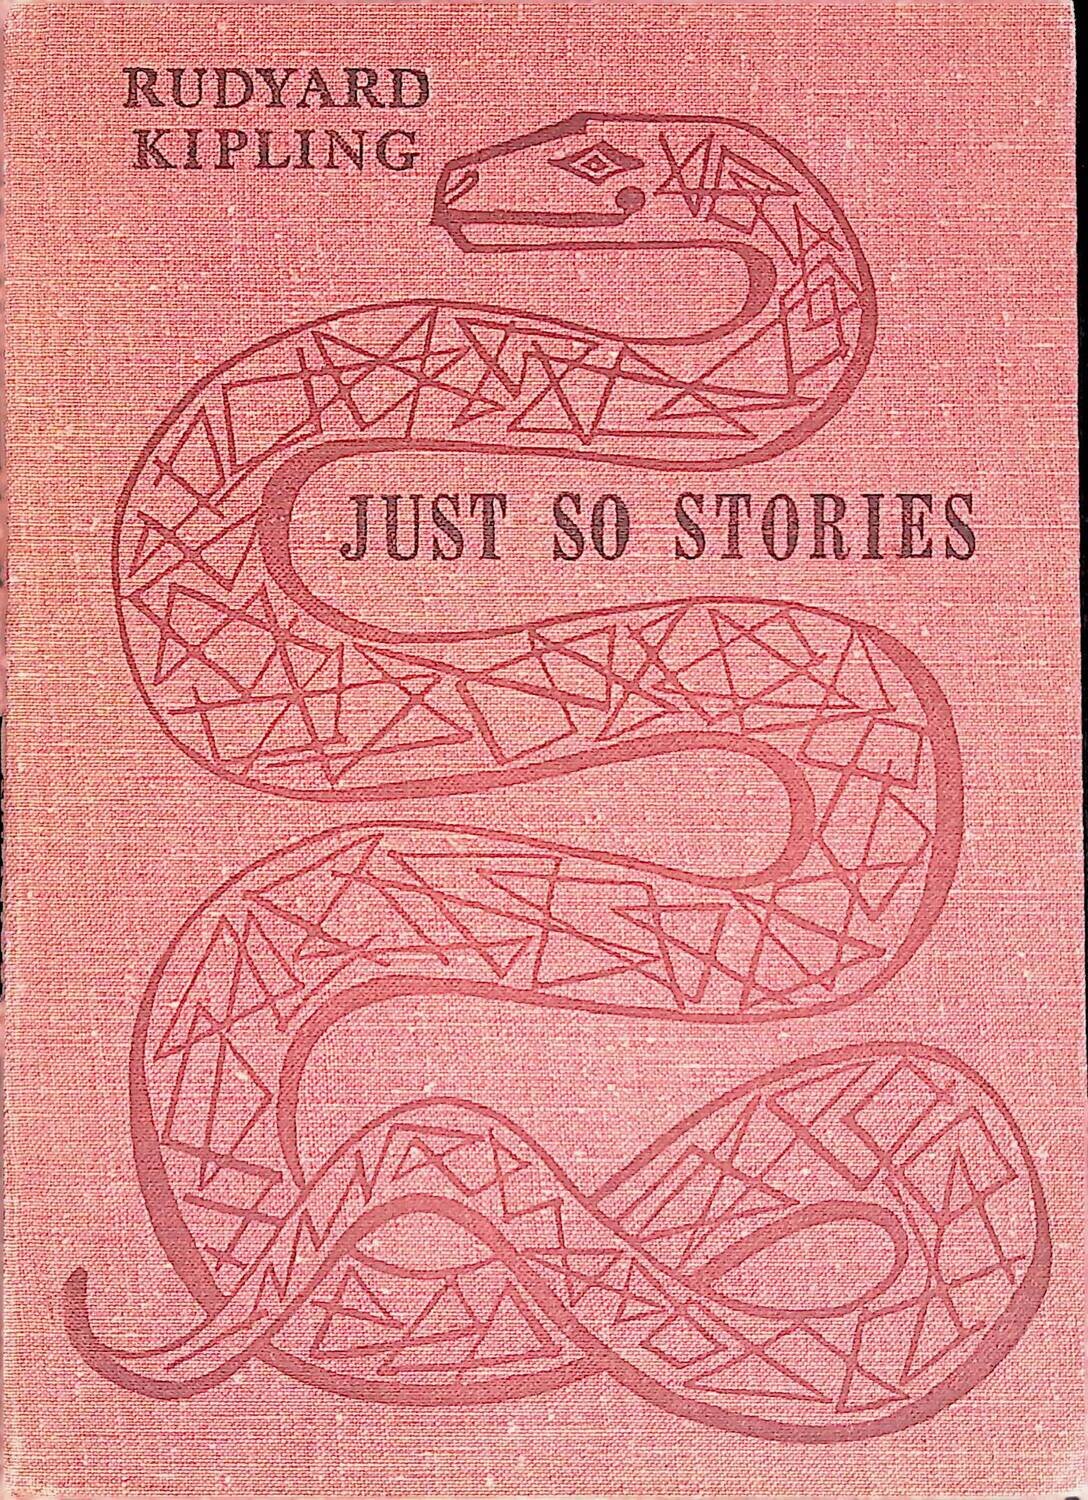 Just so stories; Rudyard Kipling